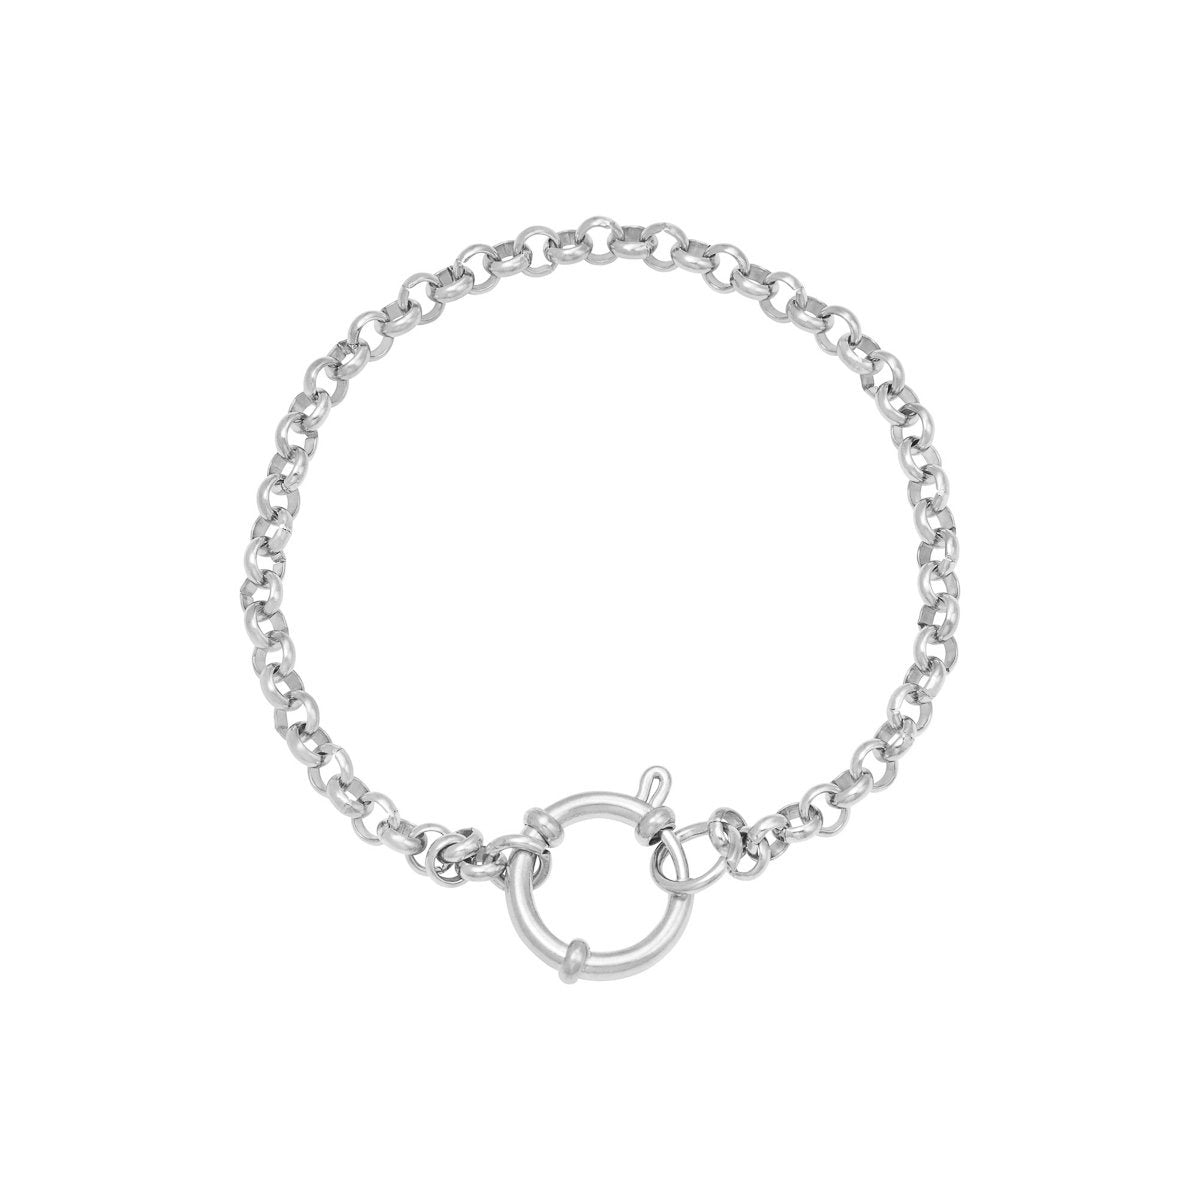 Alice Bracelet Gold and Silver - Bracelets, new arrivals - Alice Bracelet Gold and Silver - ANNABO Online Store